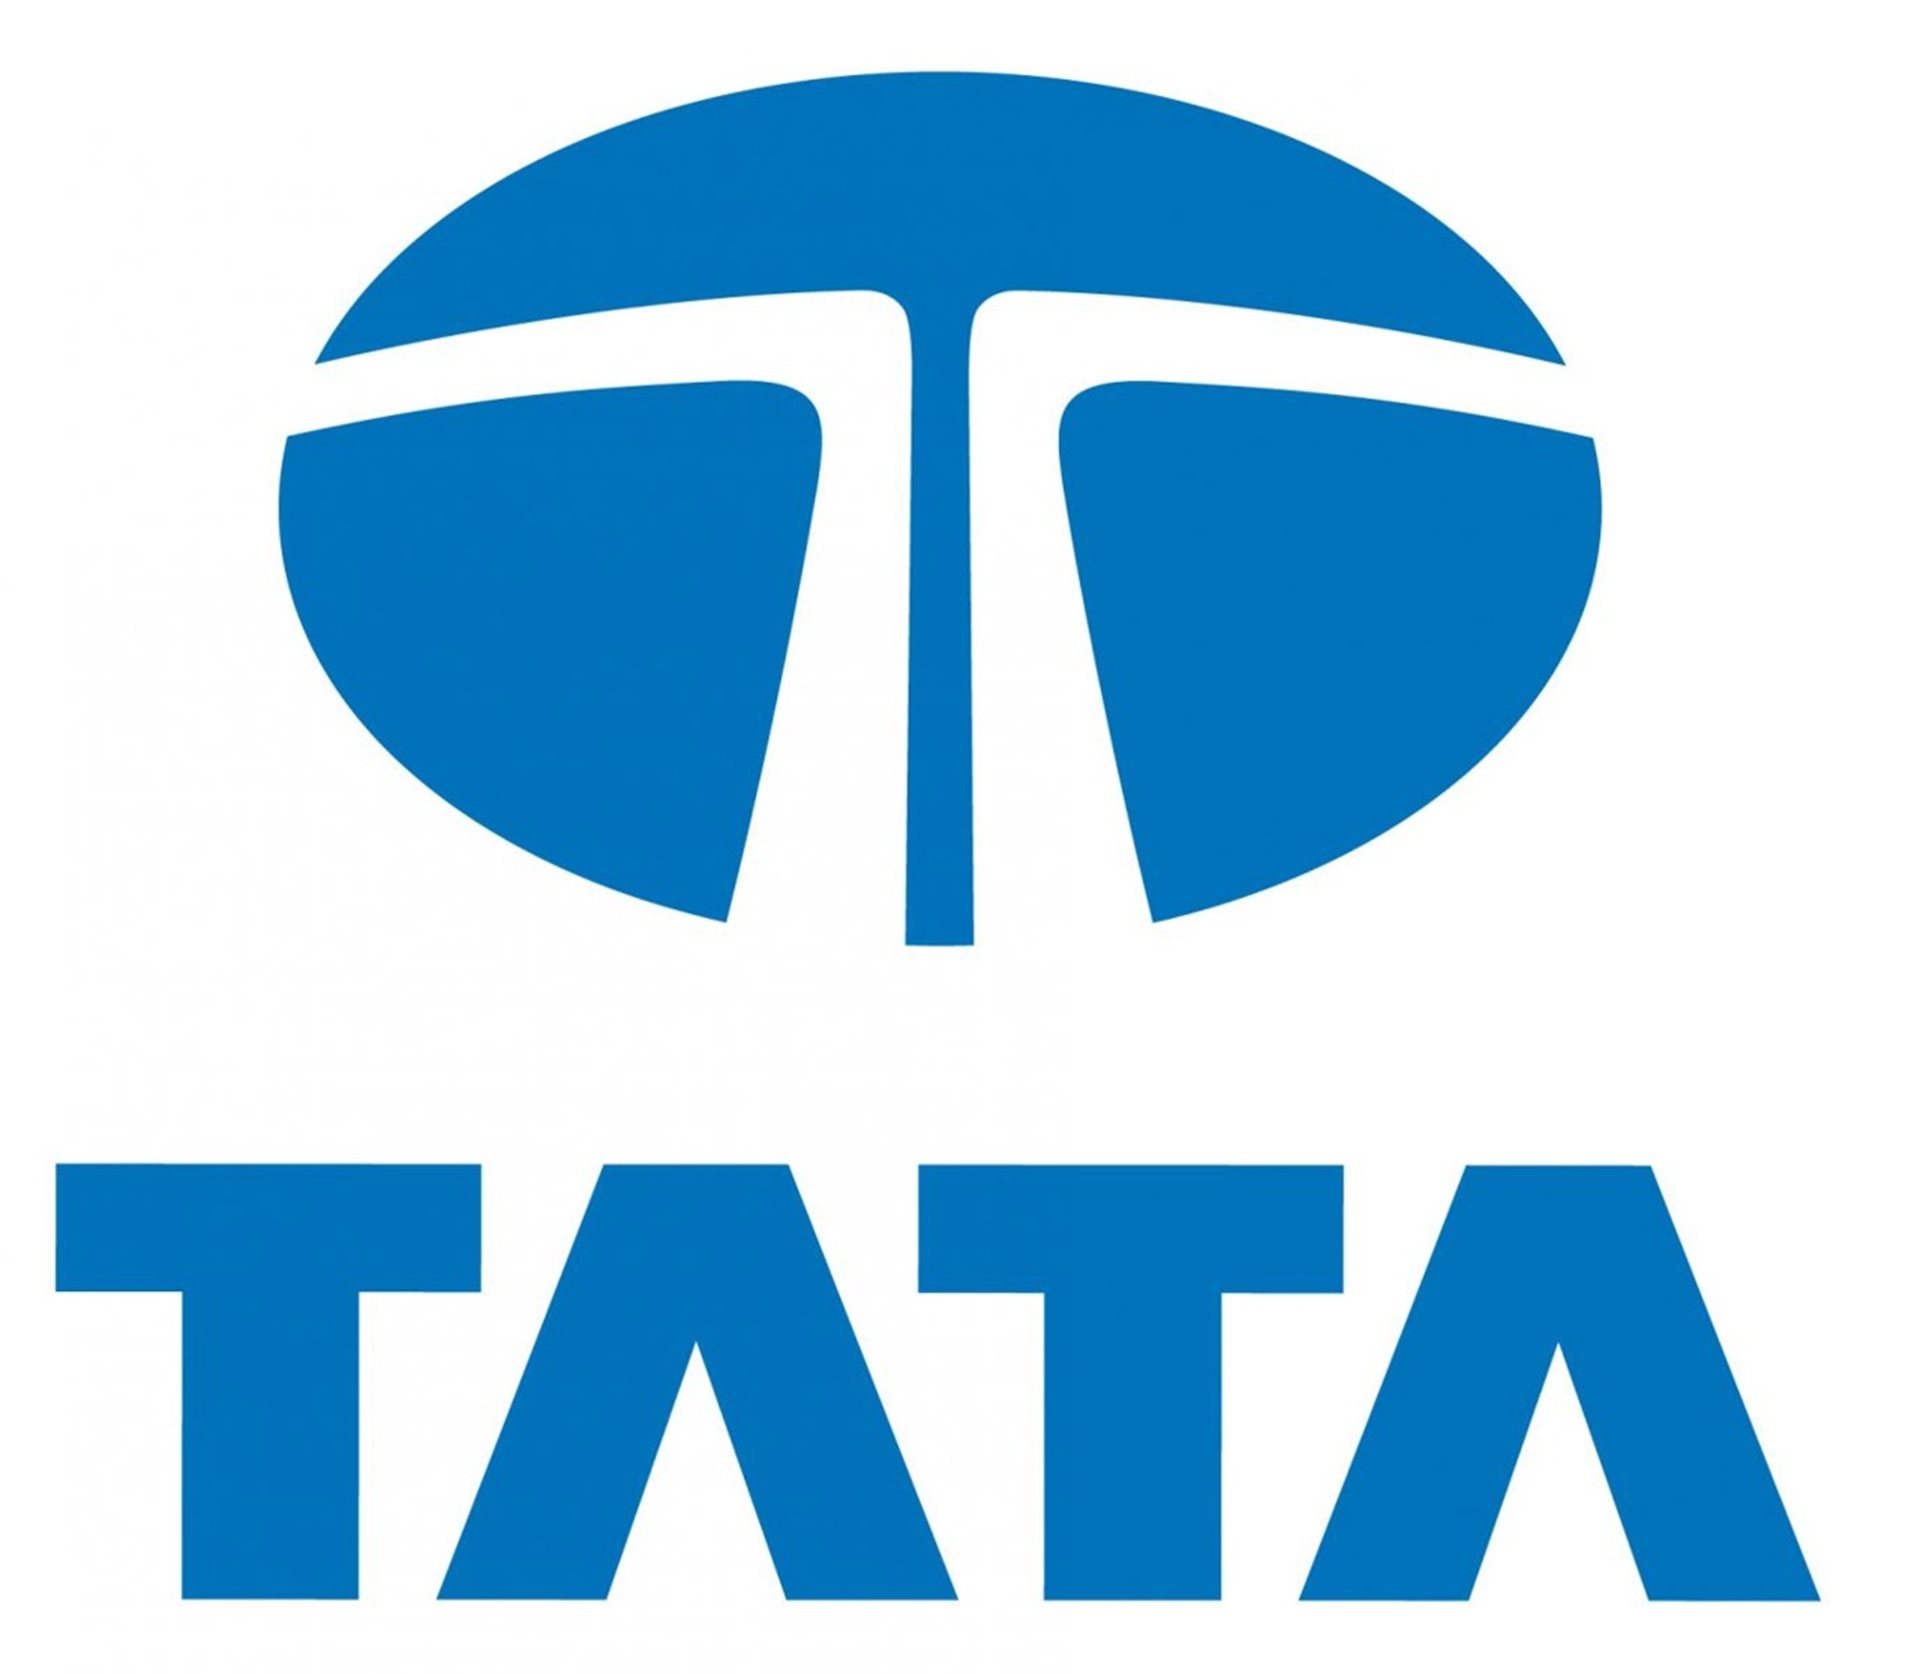 Tata Motors Group global wholesales at 103,656 numbers